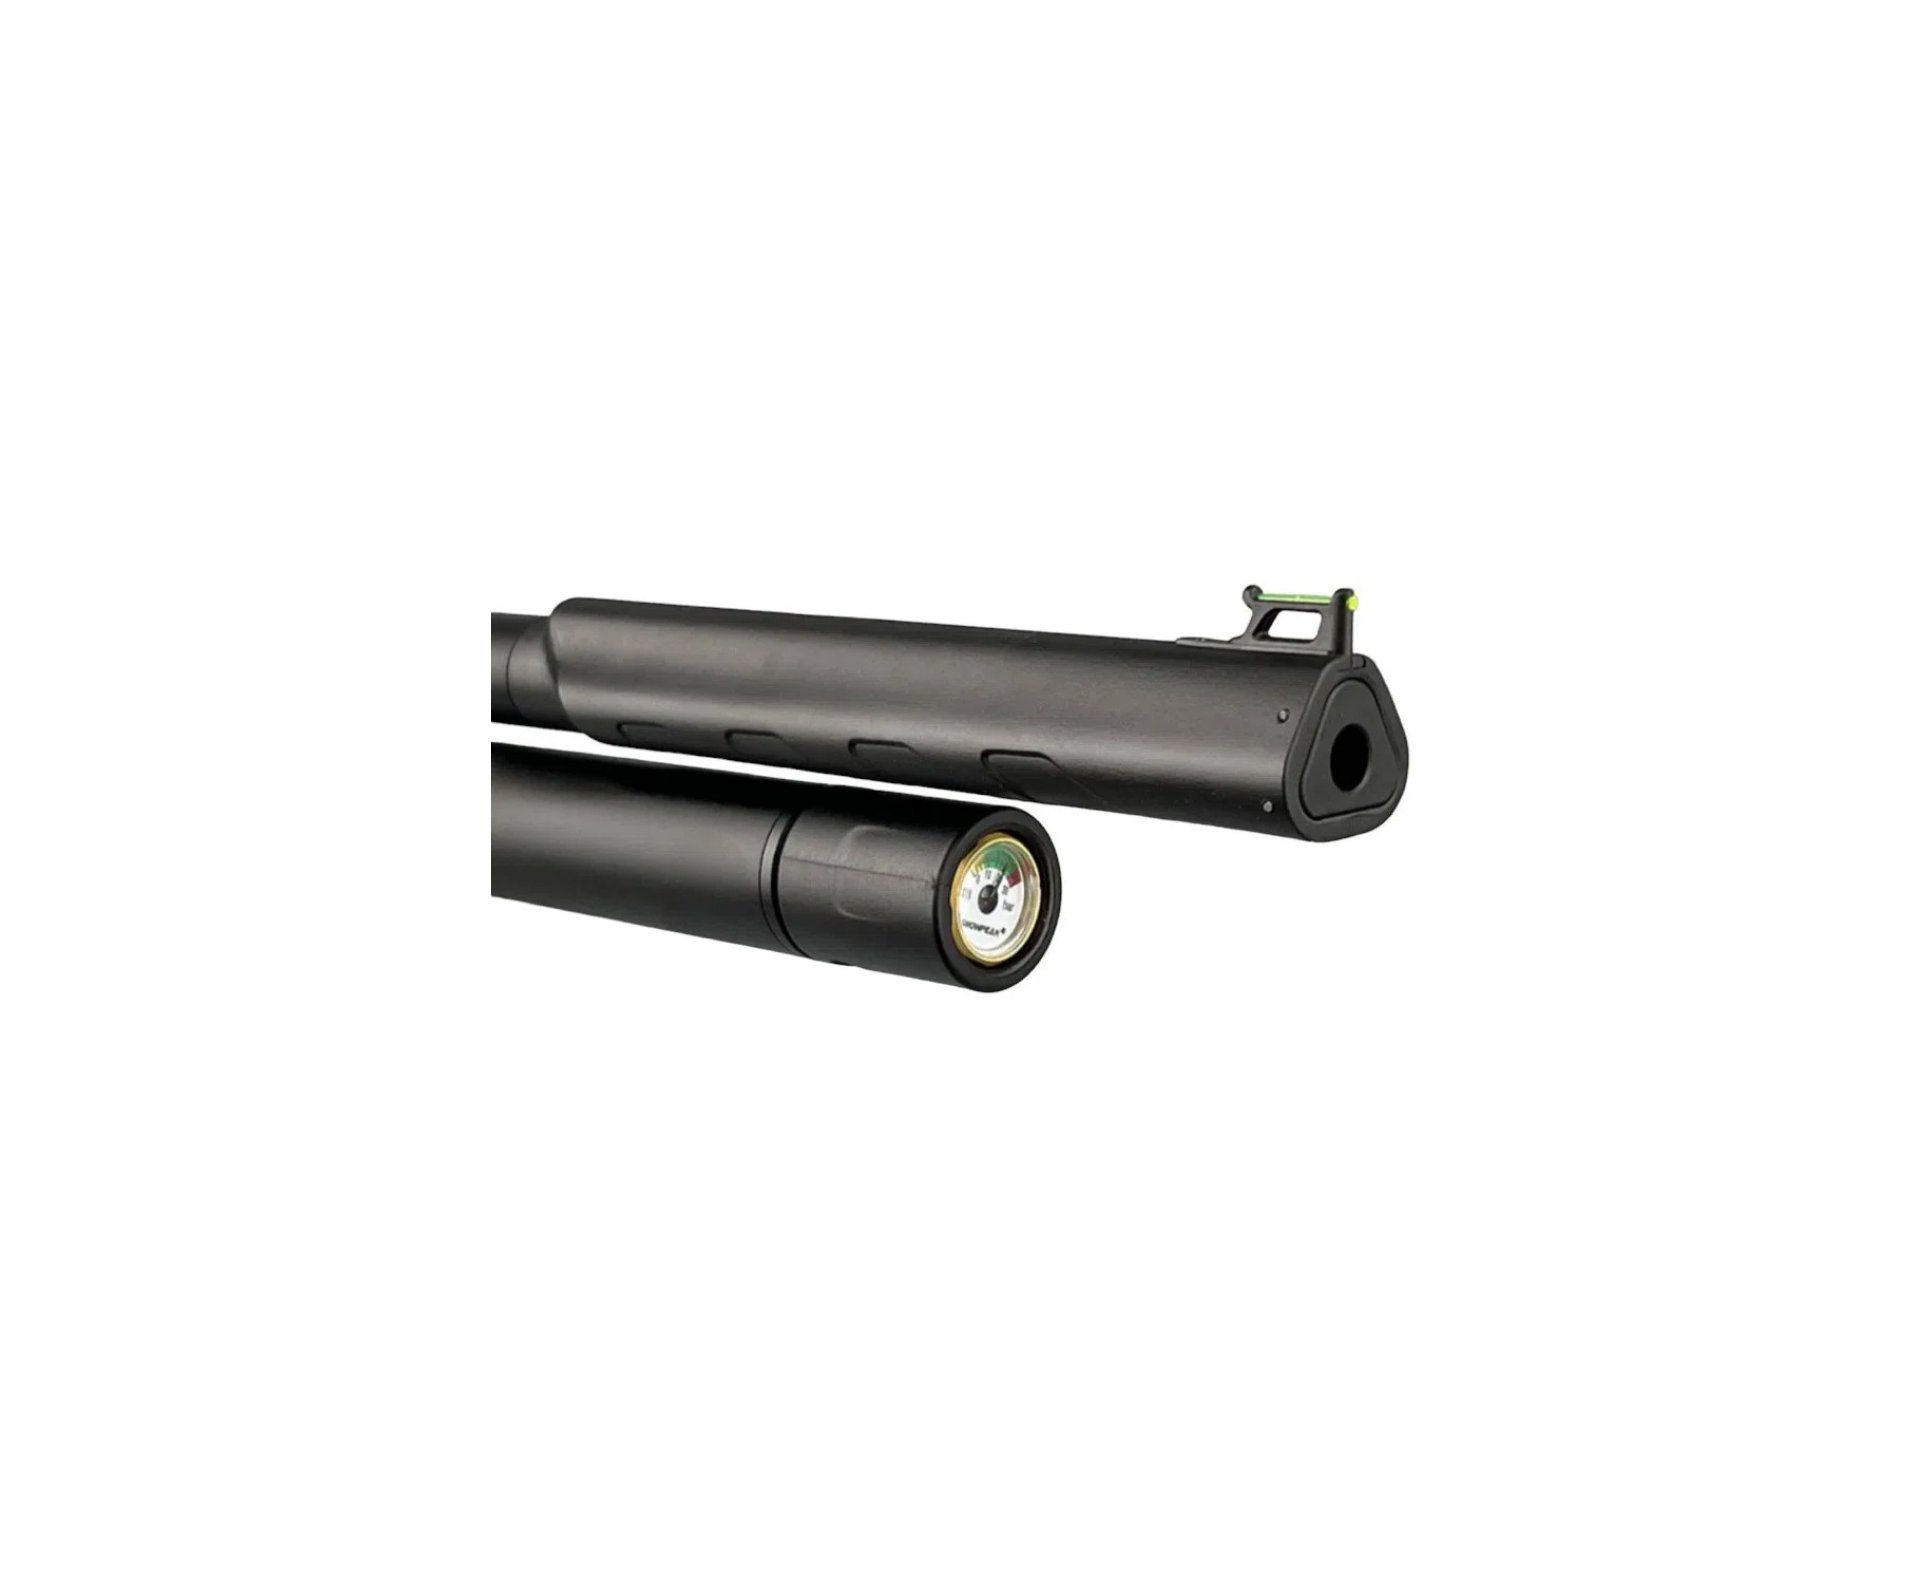 Carabina de Pressão PCP Artemis T-REX 5.5mm com Válvula Reguladora - Fixxar + Bomba